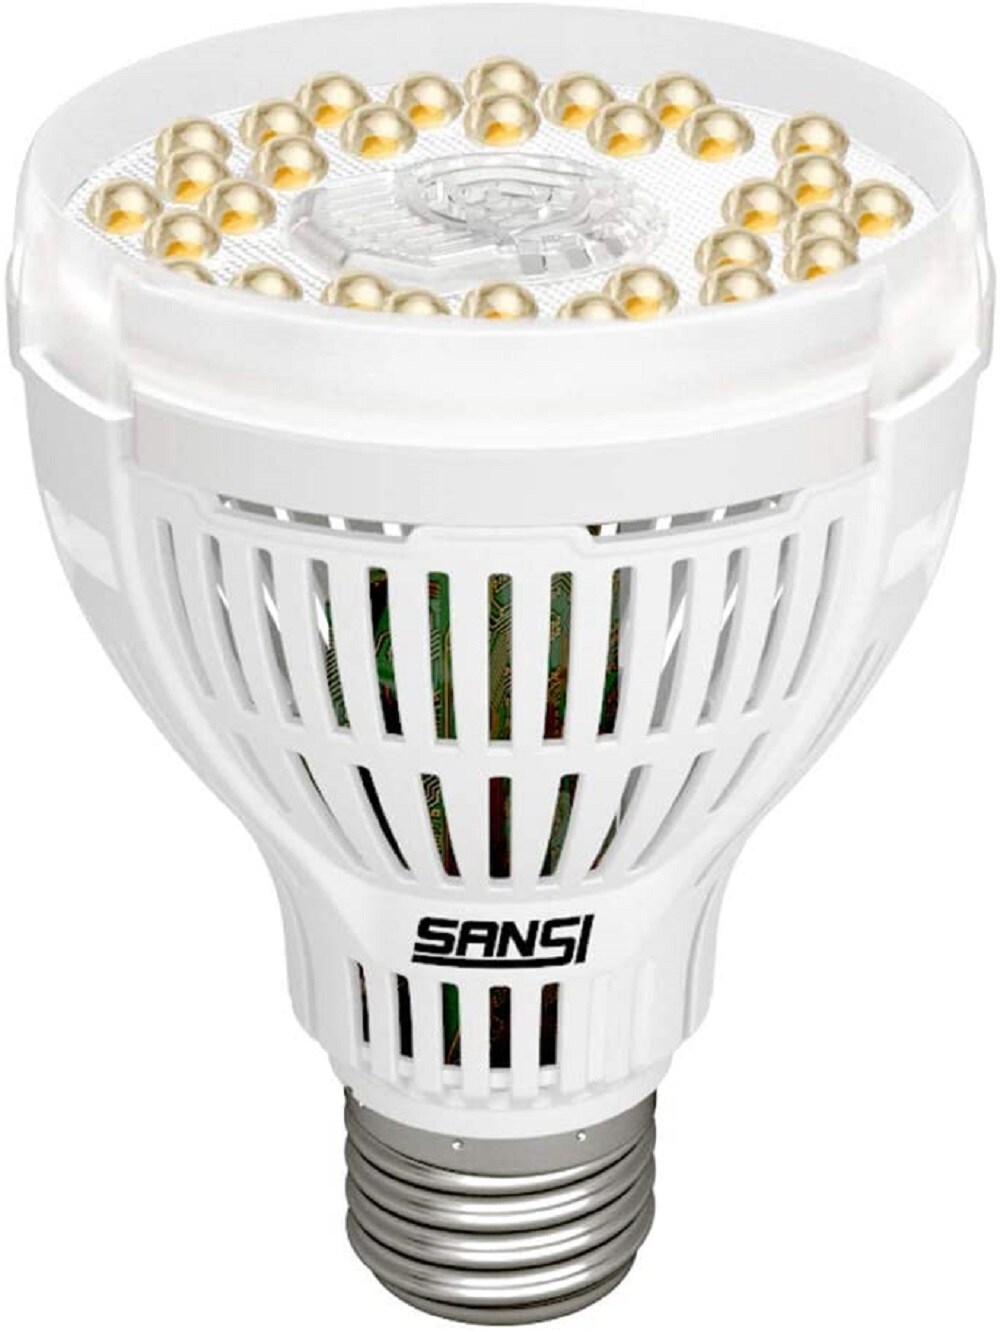 15-50W Full Spectrum E27 LED Grow Light Bulb Lamp for Veg Bloom Indoor Plant BE 